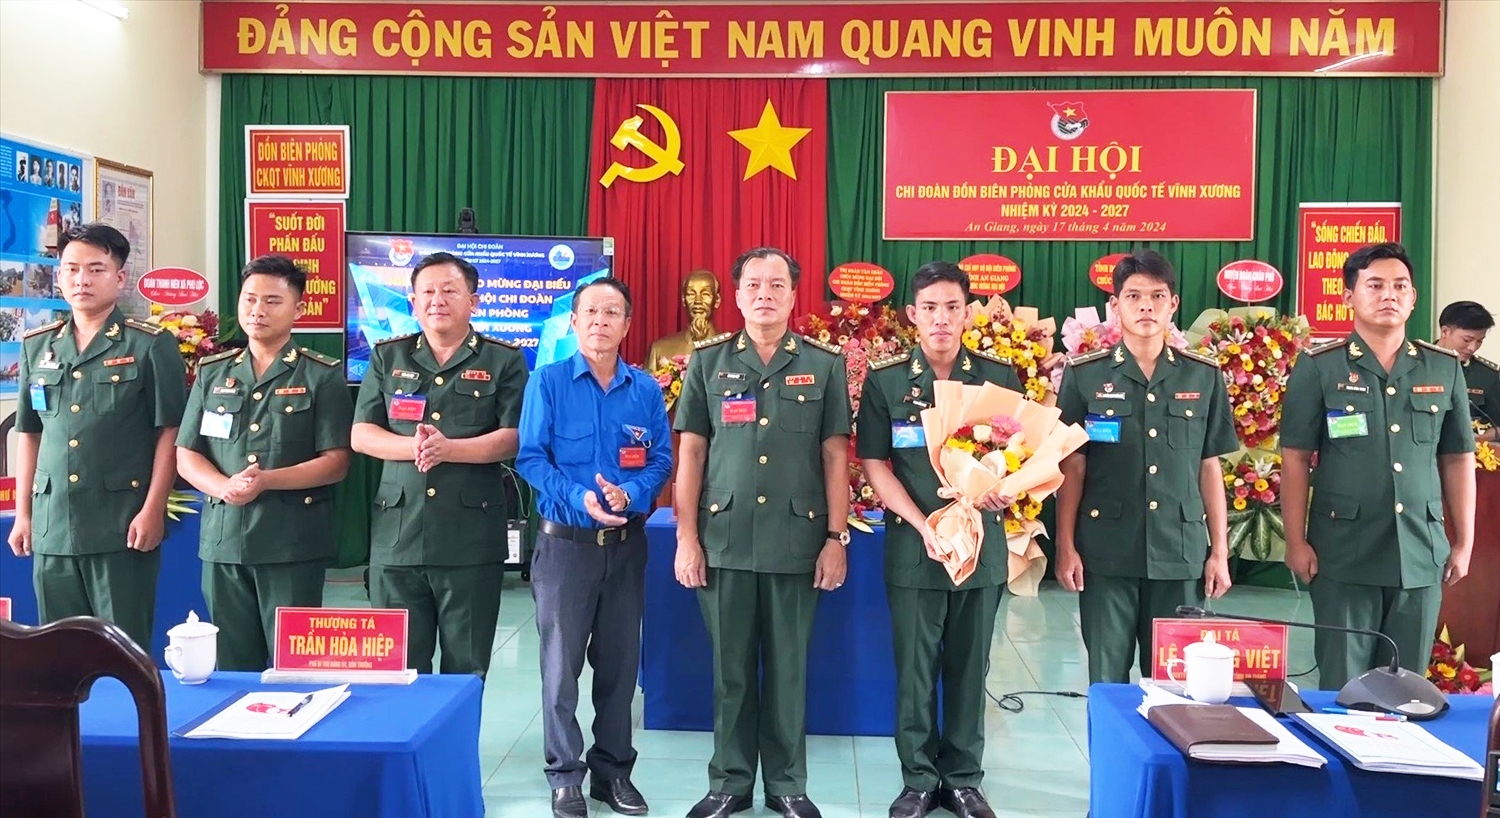 Đại tá Lê Hoàng Việt chụp ảnh lưu niệm cùng Ban Chấp hành Chi đoàn ĐBP Cửa khẩu Quốc tế Vĩnh Xương nhiệm kỳ 2024 - 2027